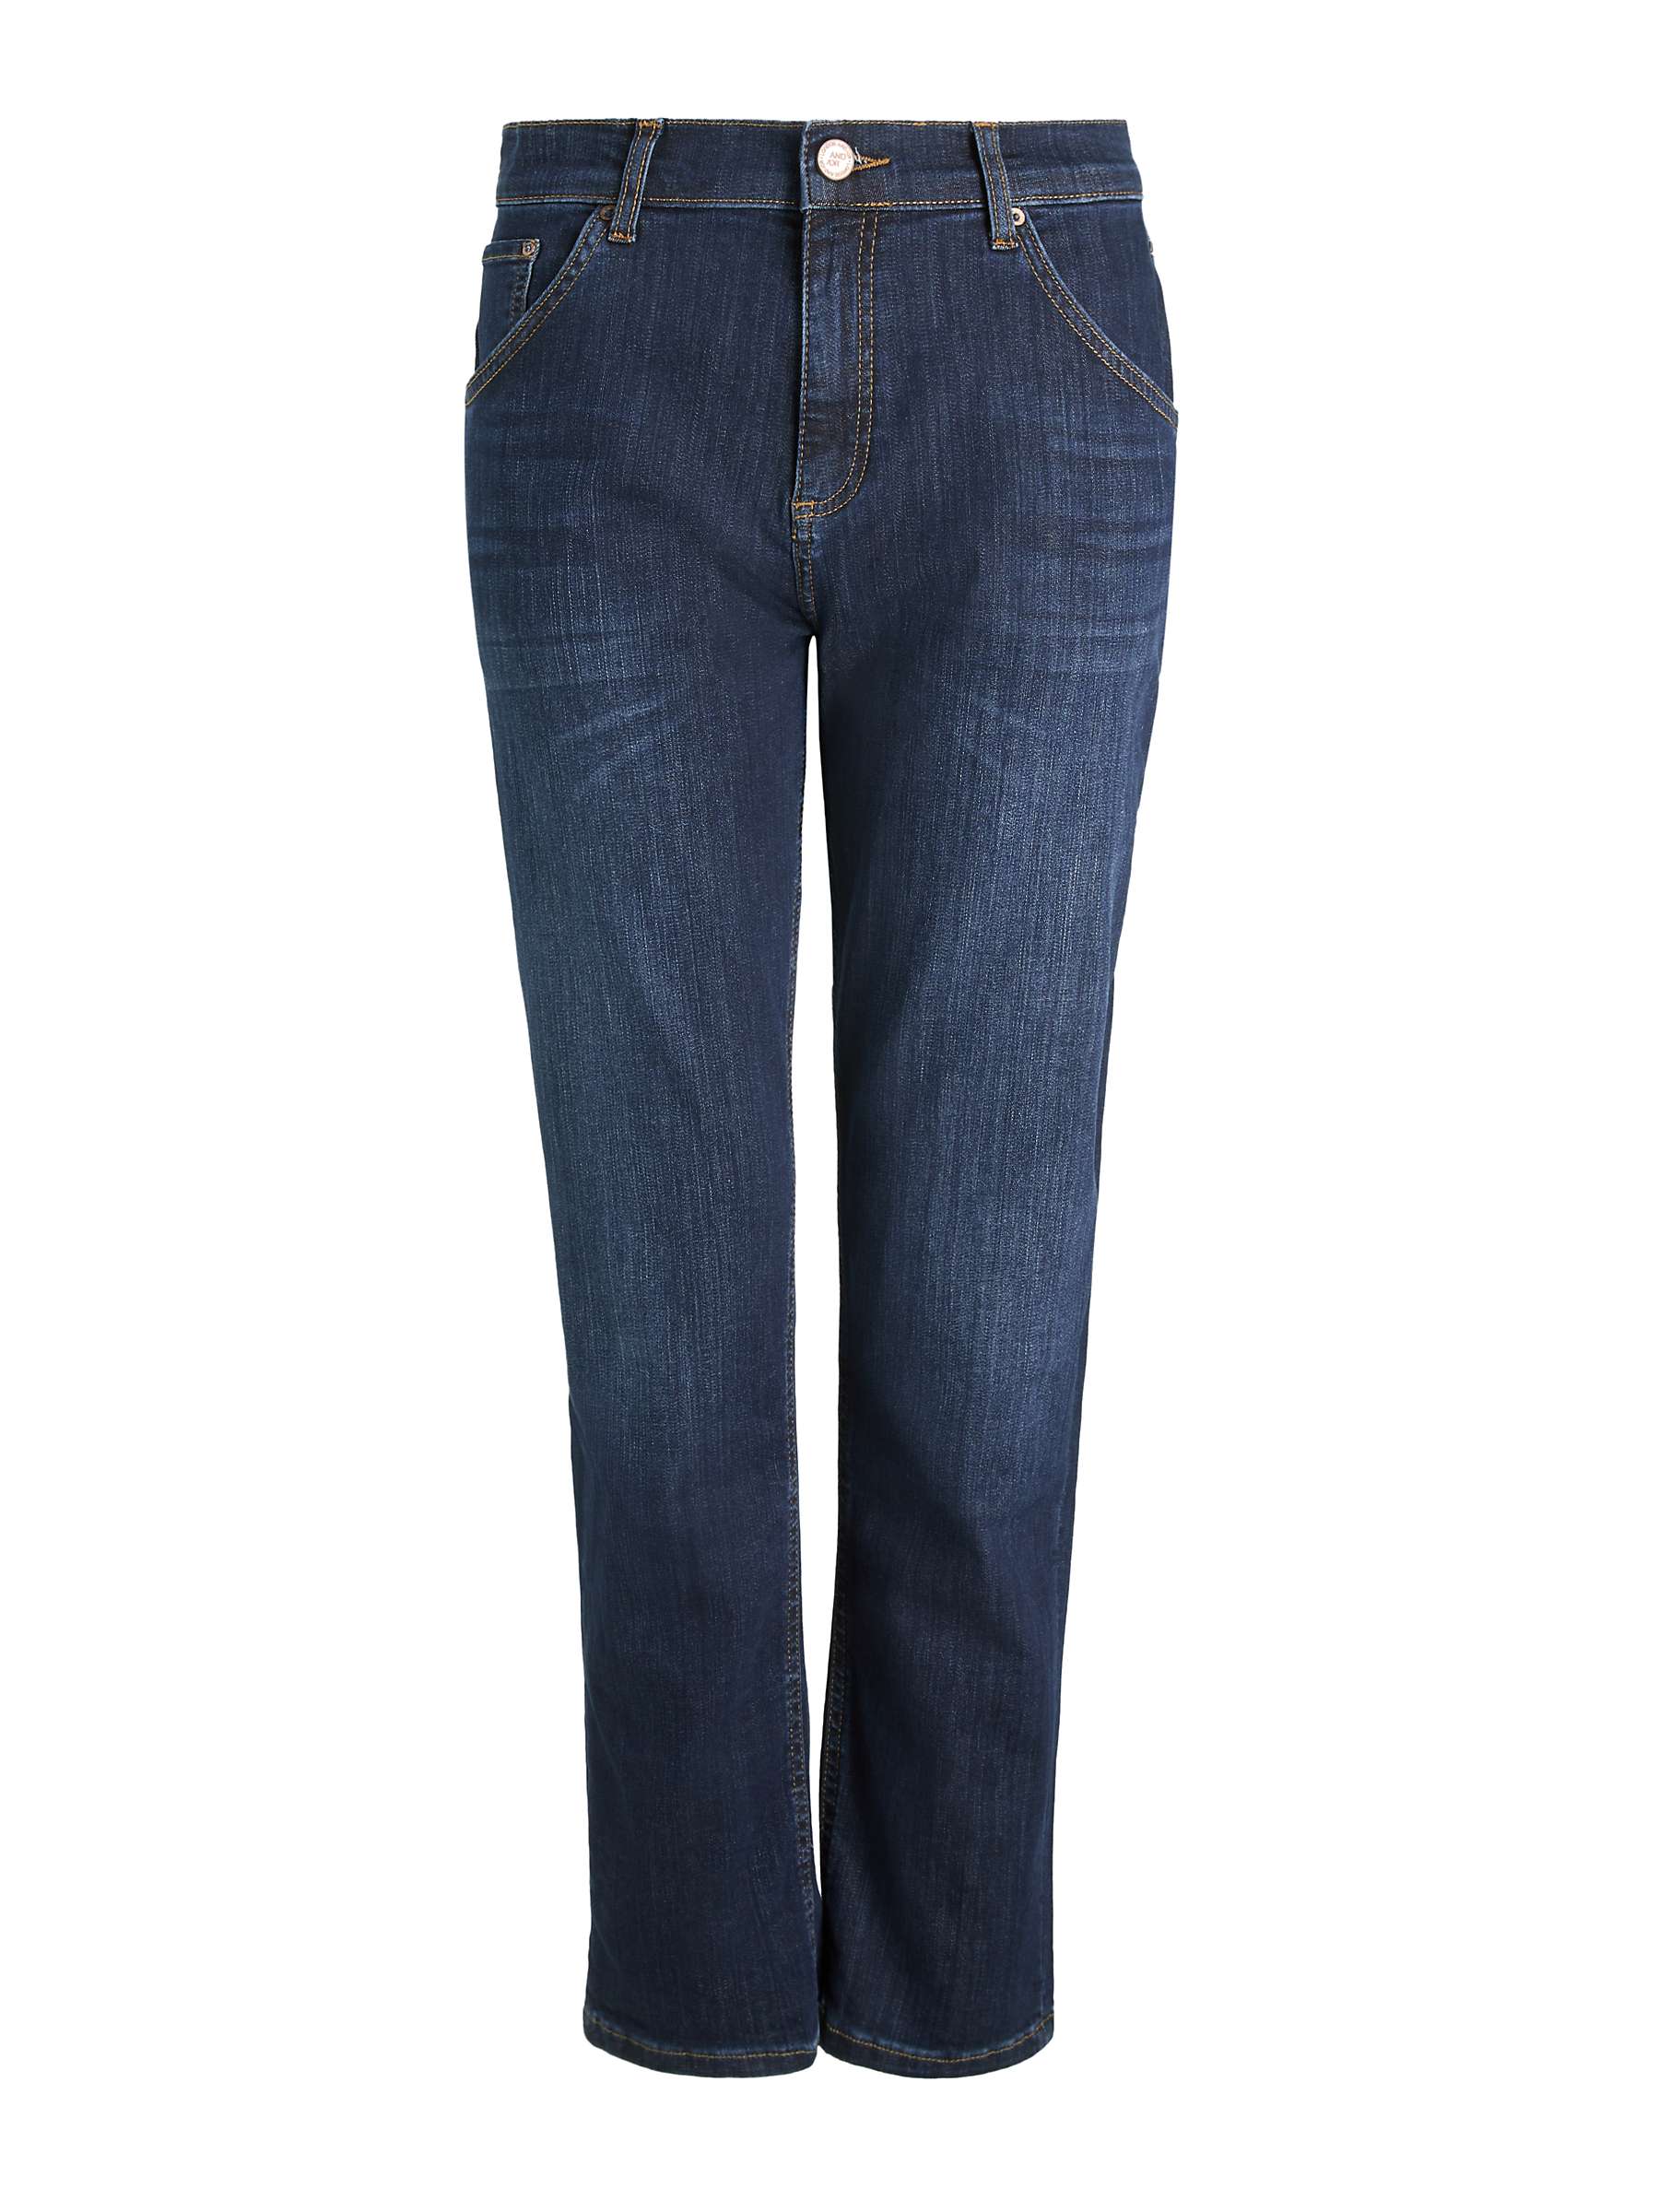 Buy AND/OR Venice Beach Boyfriend Jeans, Azurite Dark Online at johnlewis.com